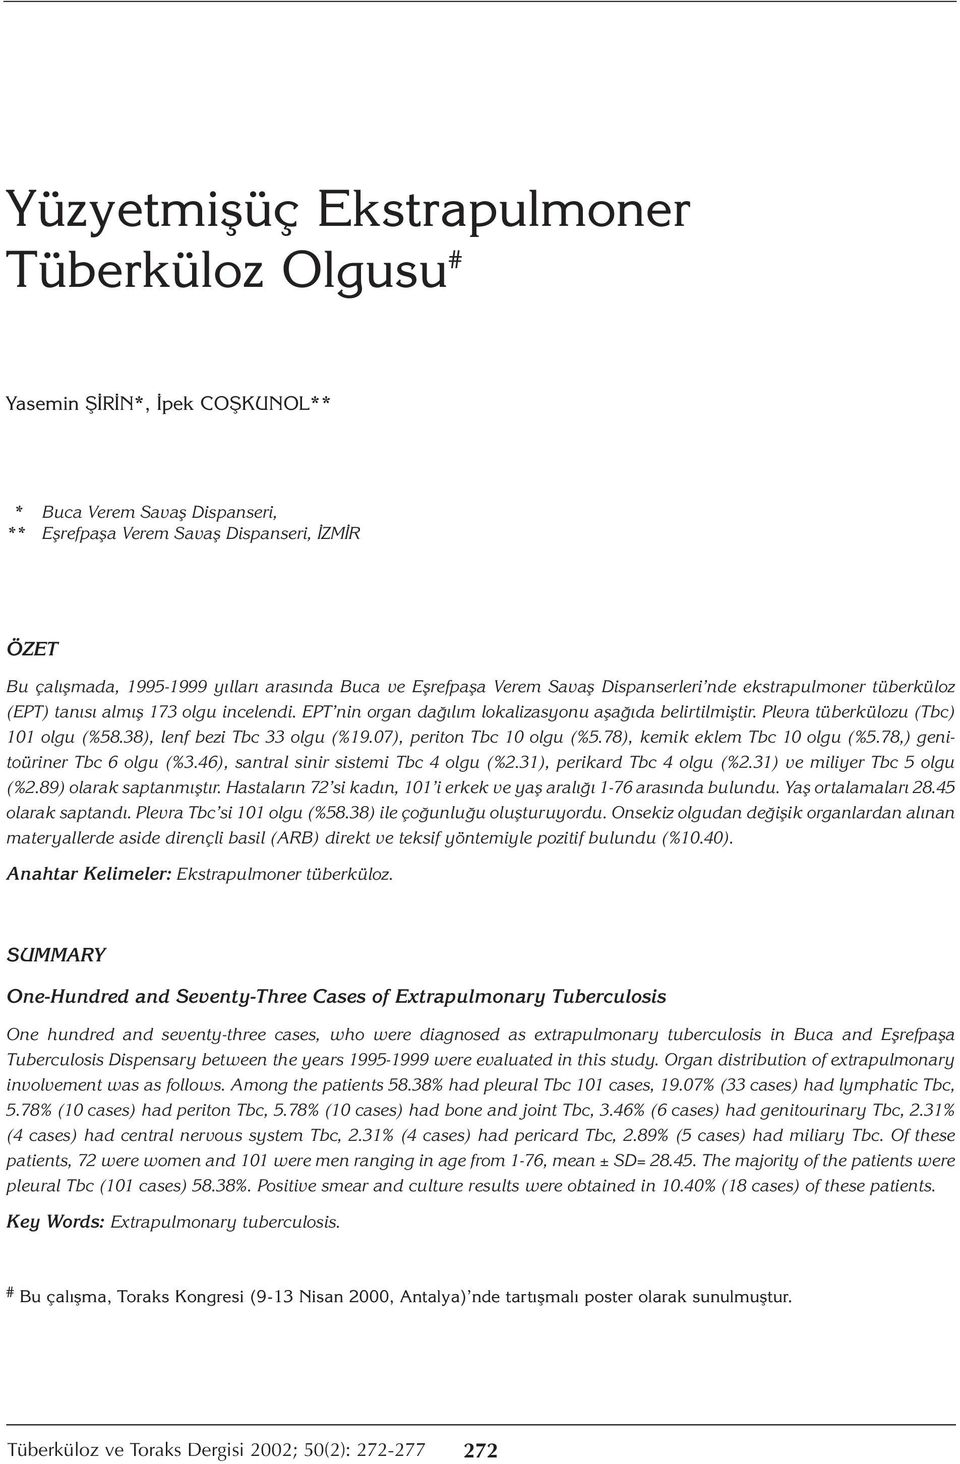 Plevra tüberkülozu (Tbc) 101 olgu (%58.38), lenf bezi Tbc 33 olgu (%19.07), periton Tbc 10 olgu (%5.78), kemik eklem Tbc 10 olgu (%5.78,) genitoüriner Tbc 6 olgu (%3.